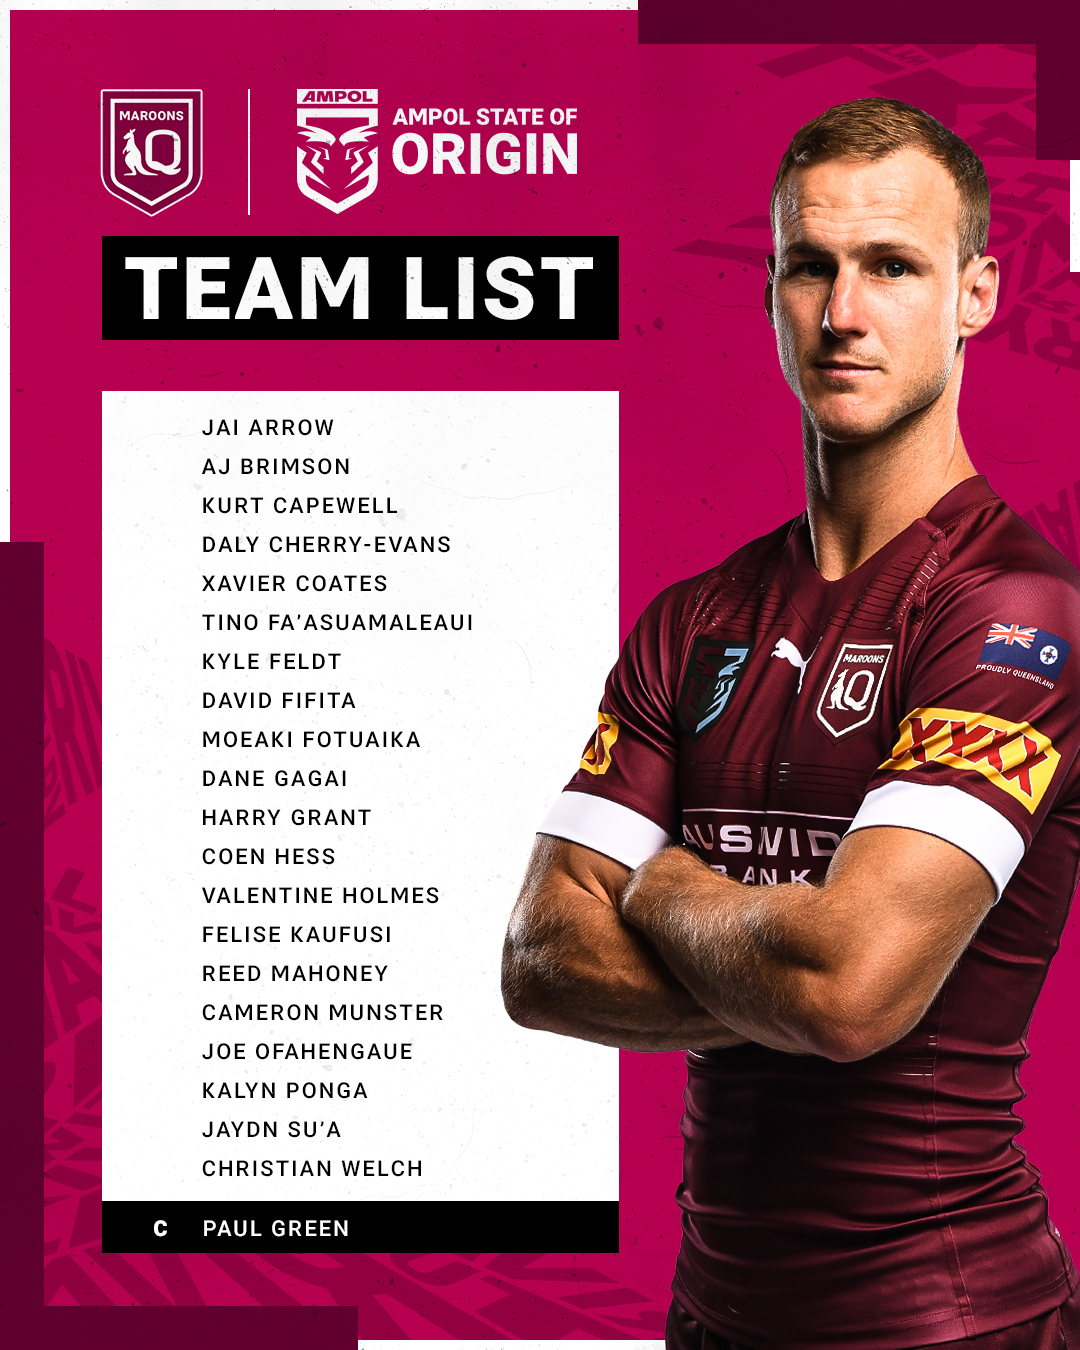 Lựa chọn đội hình cho QLD Maroons trong trận đấu #Origin với NRL trên Twitter. Biết đâu đây sẽ là những cầu thủ vô cùng quan trọng để giúp đội của bạn chiến thắng trong trận đấu.